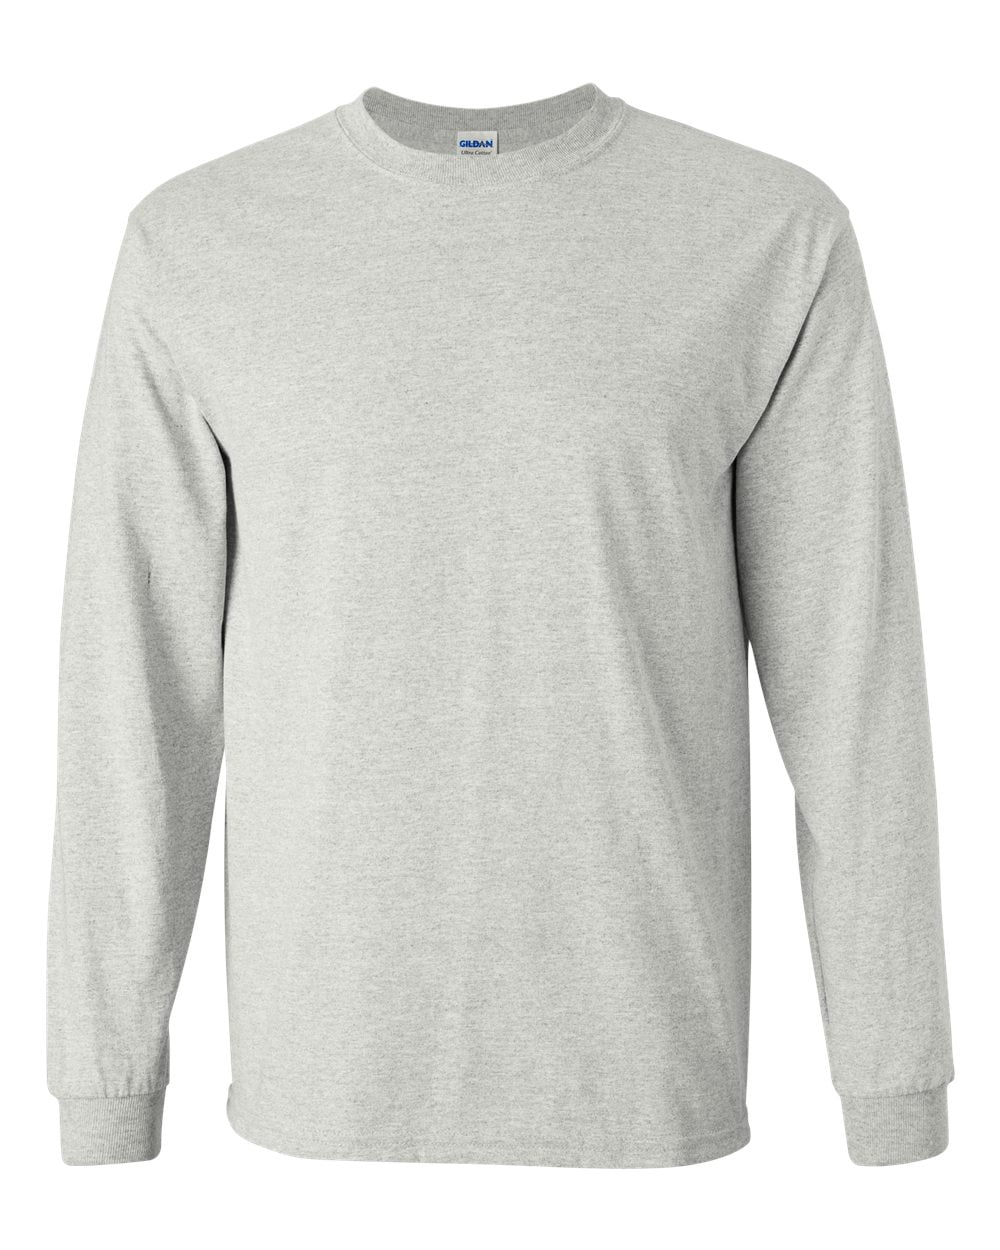 New - IWPF - Gildan - Ultra Cotton® Long Sleeve T-Shirt